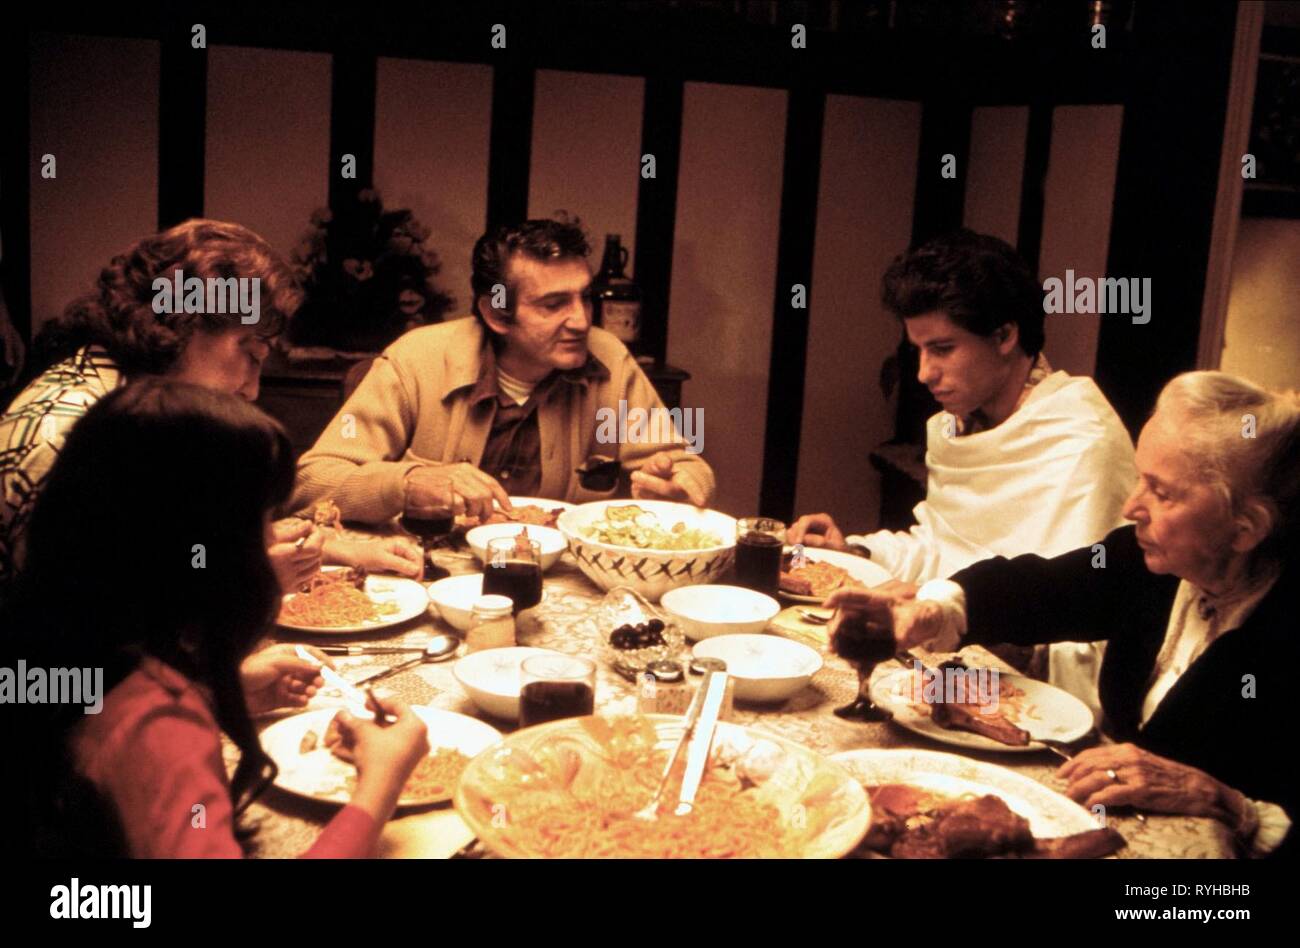 VAL BISOGLIO, John Travolta, NINA HANSEN, la febbre del sabato sera, 1977 Foto Stock